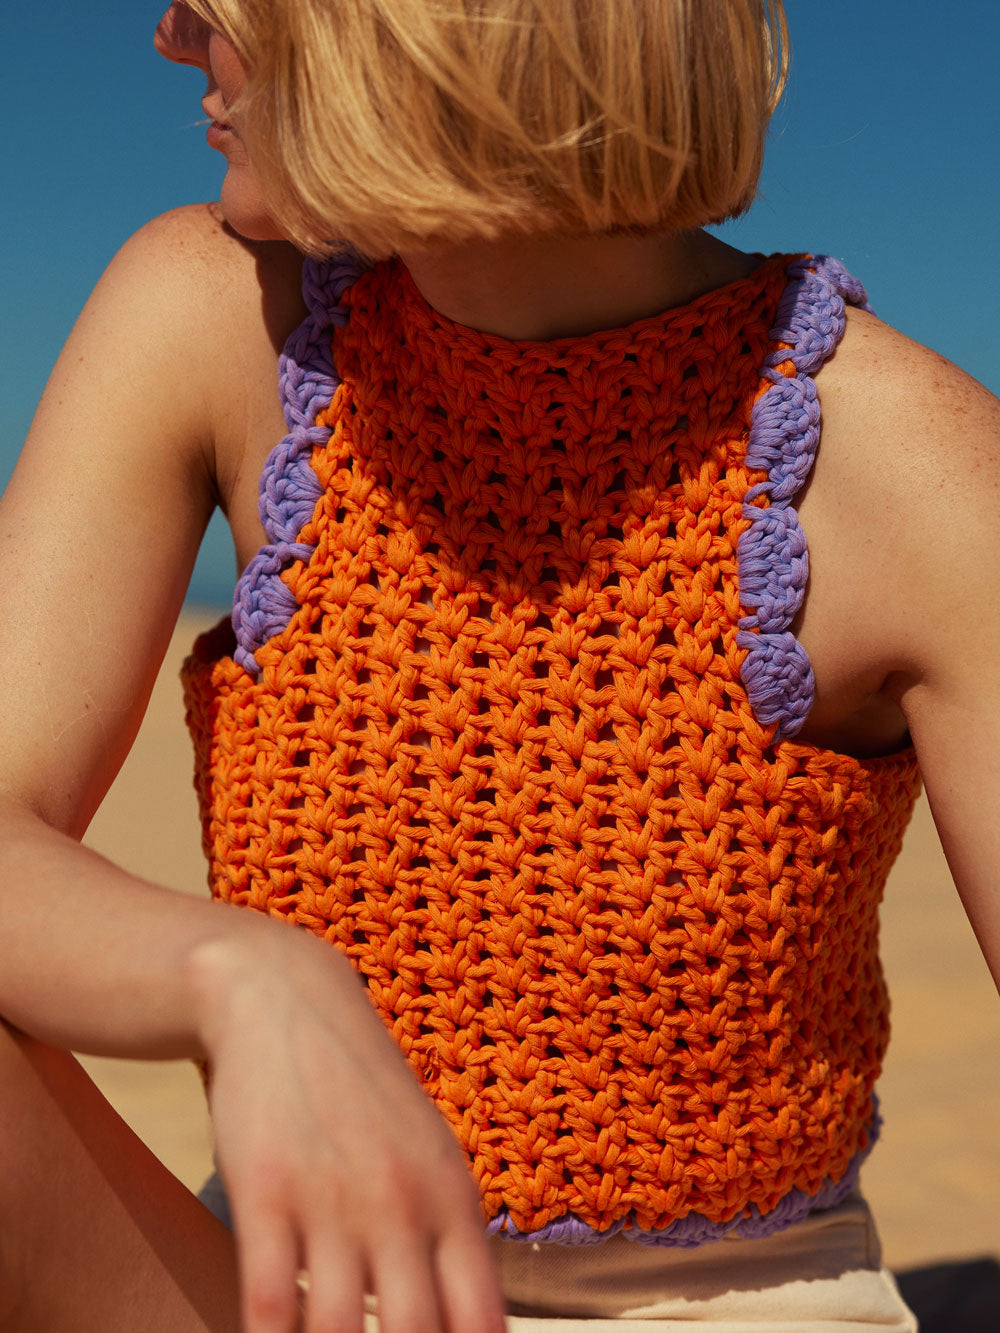 Easy-To-Do Crochet Kit from Little Folks